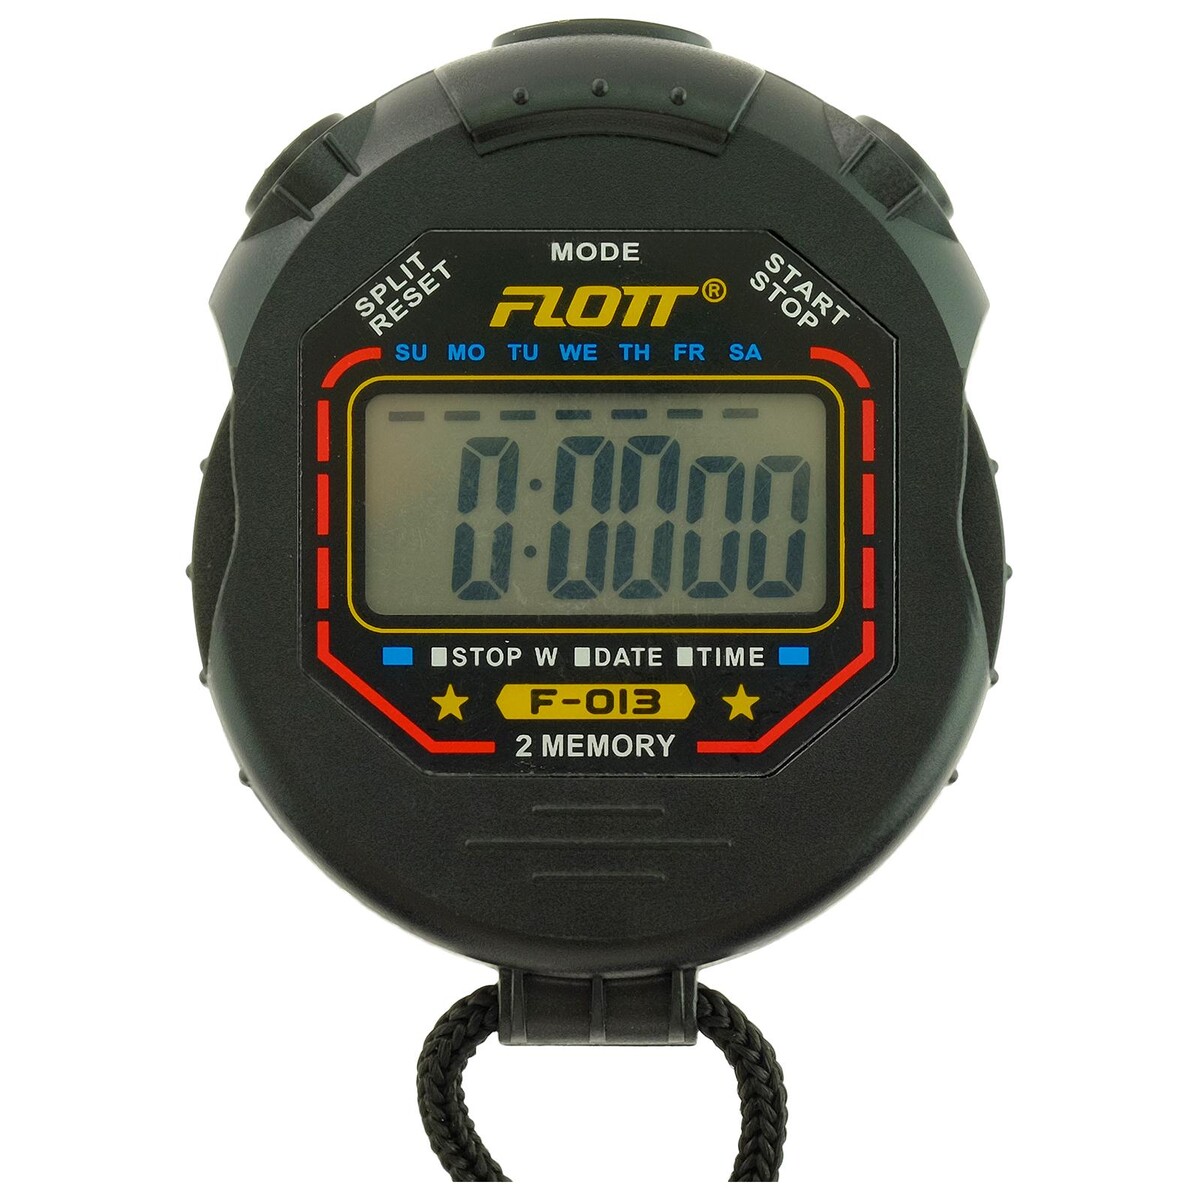 Секундомер, стоп часы, будильник, календарь, на 2 человека секундомер mad wave stopwatch 200 memory m1409 02 0 10w